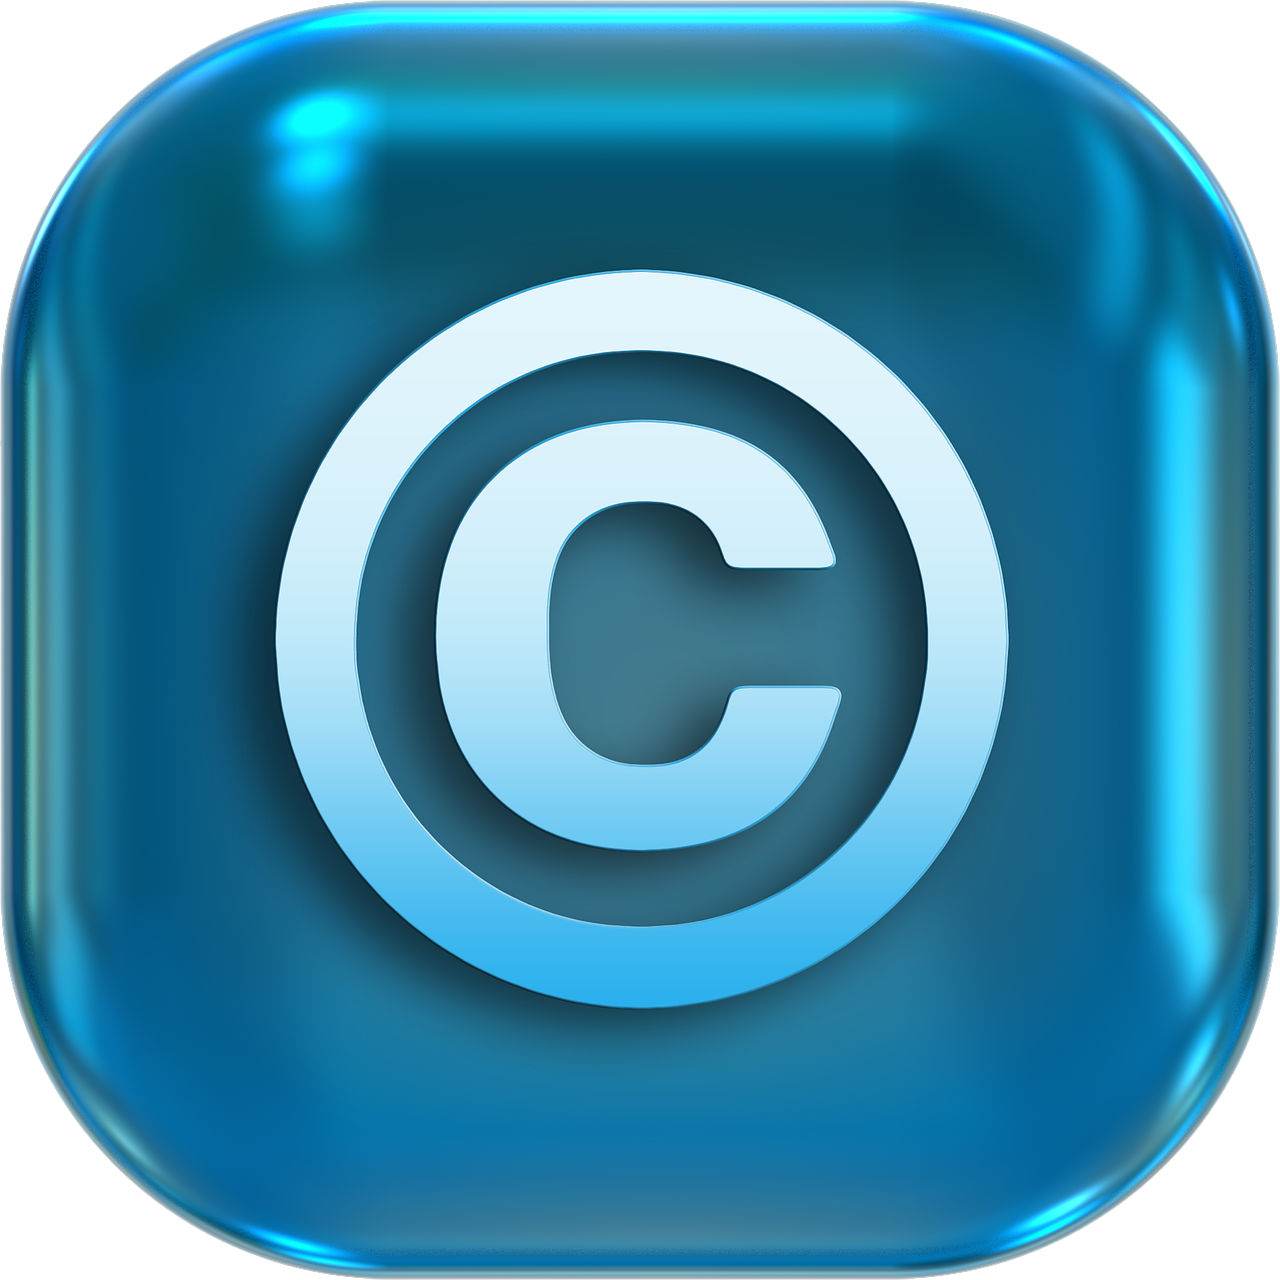 Werbung für Plagiate  – eine Verletzung des urheberrechtlichen Verbreitungsrechts